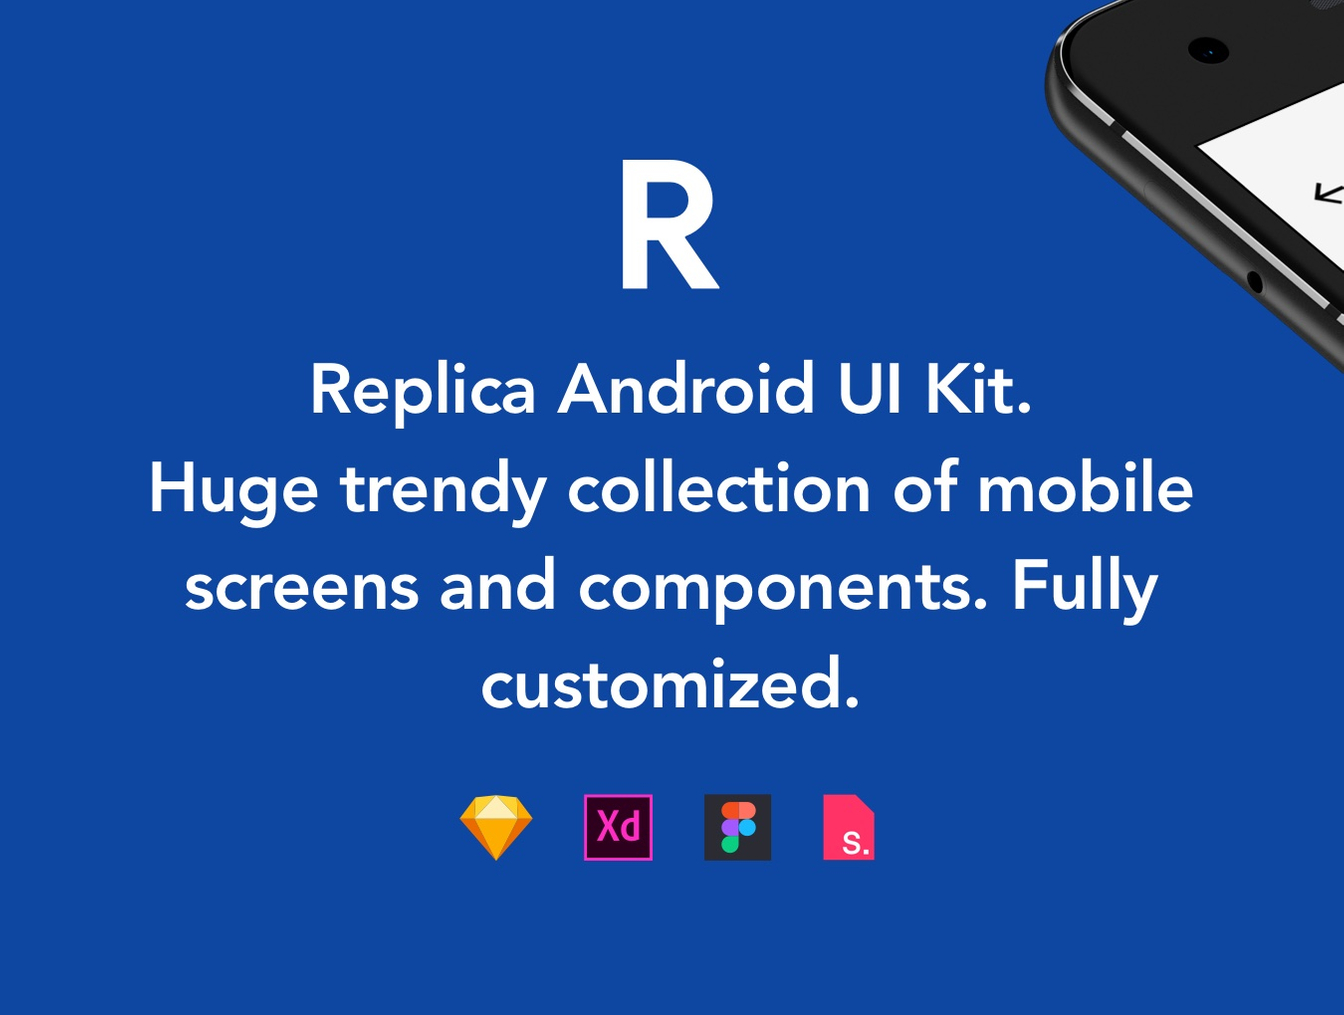 高质量安卓智能手机服装&社交UI工具包 Replica Android UI Kit插图